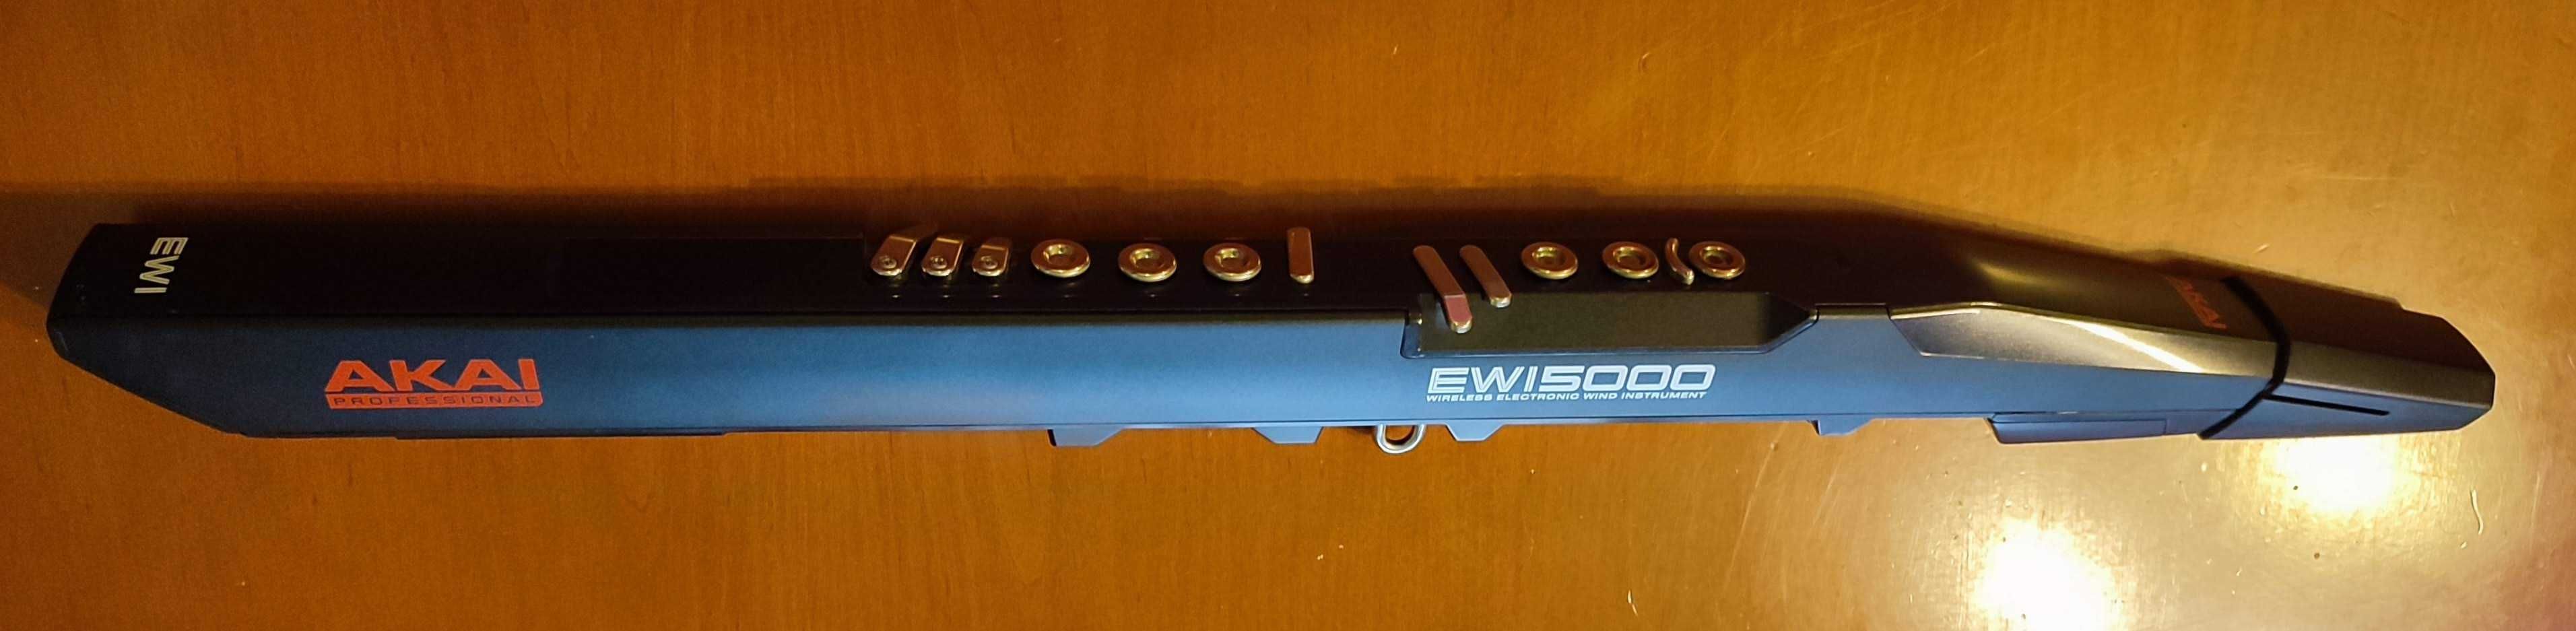 AKAI EWI 5000 elektroniczny instrument dęty